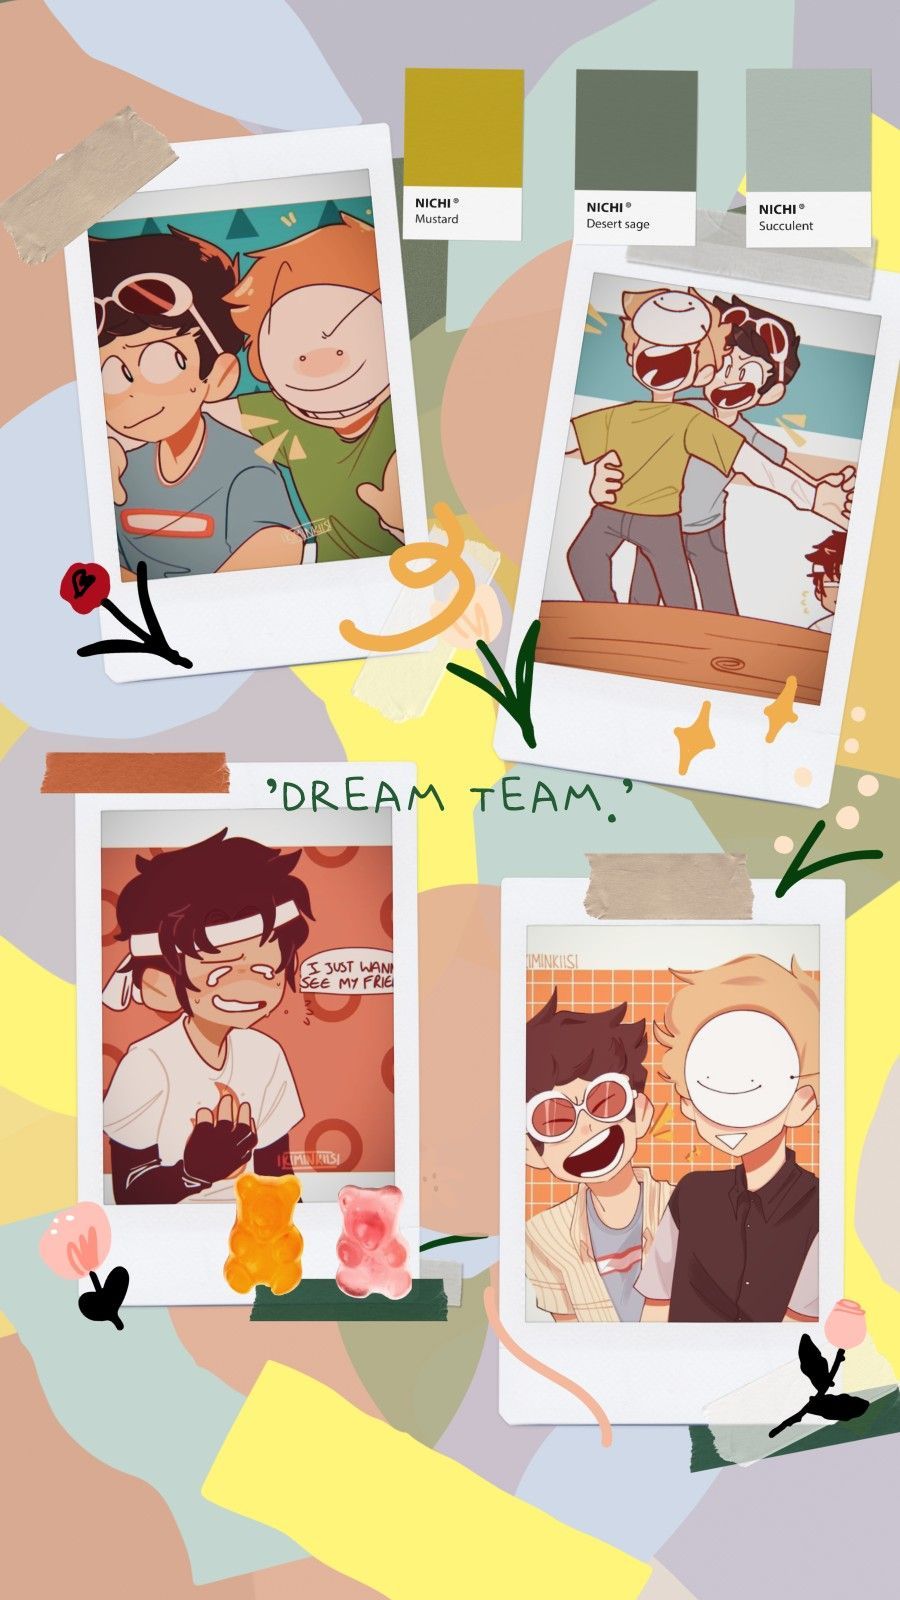 dream, sapnap, georgenotfound. dream team wallpaper lockscreen. Team wallpaper, Dream team, Minecraft wallpaper